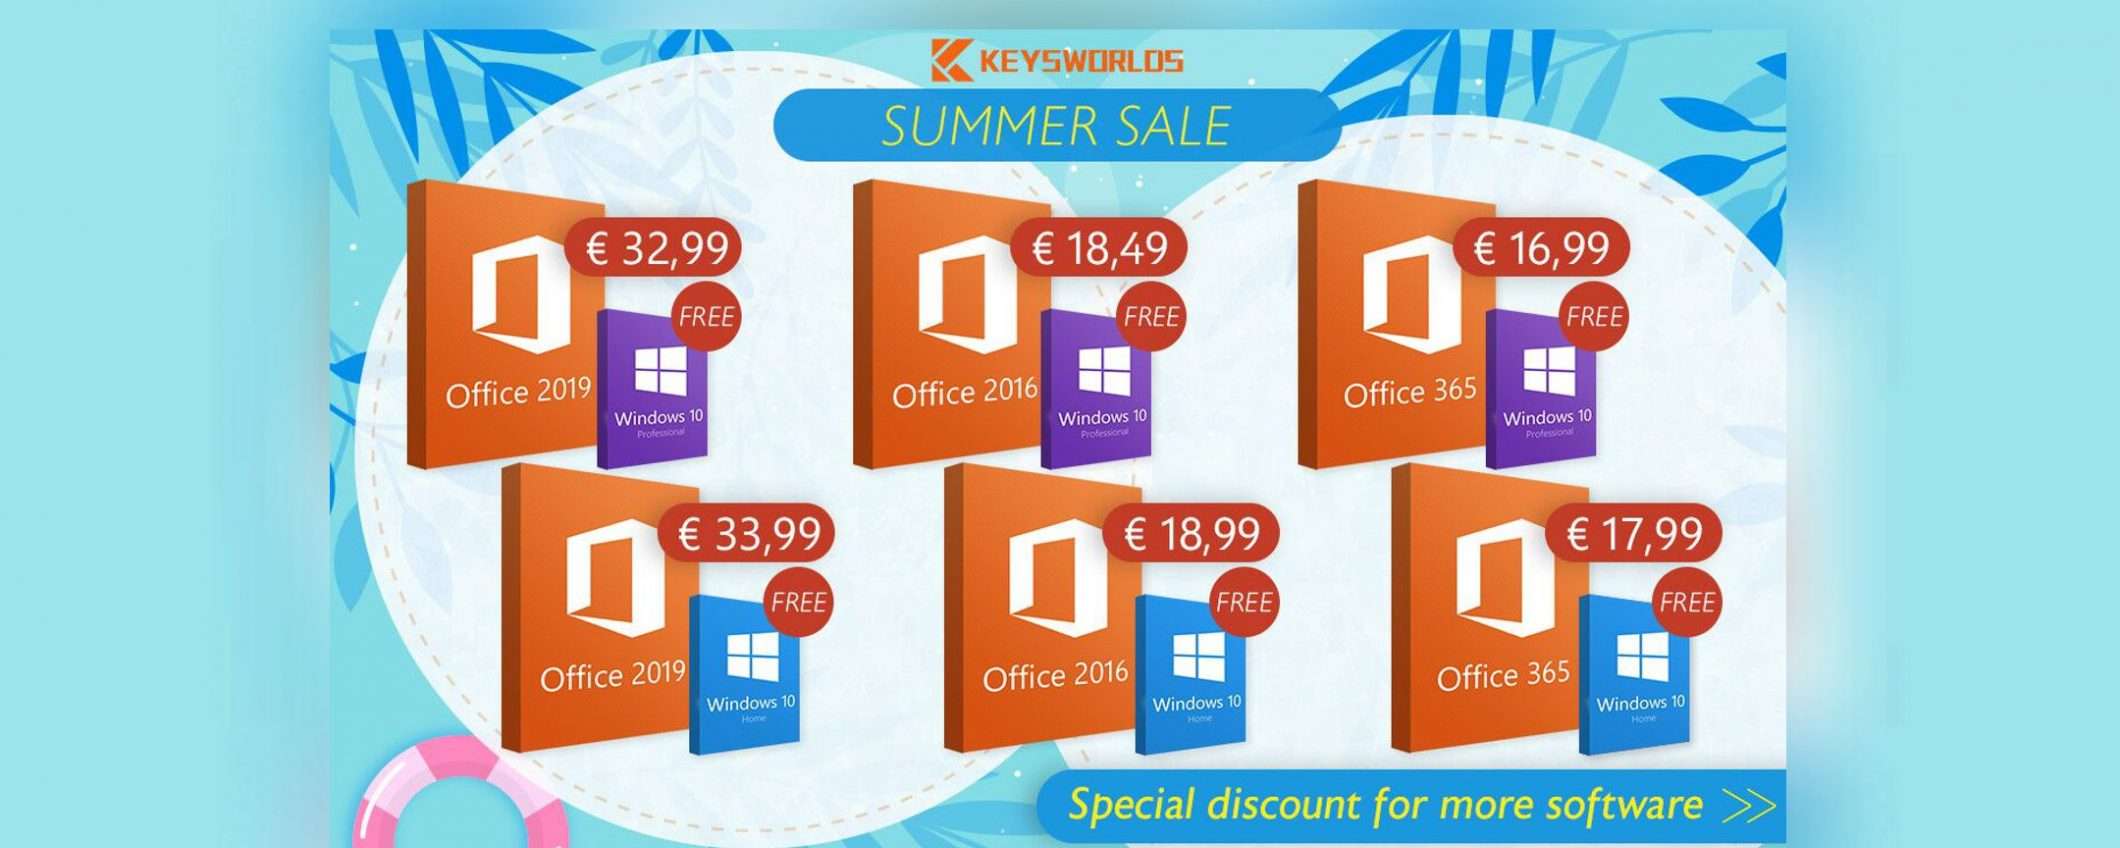 Promozione dell’estate: Windows 10 completamente gratis